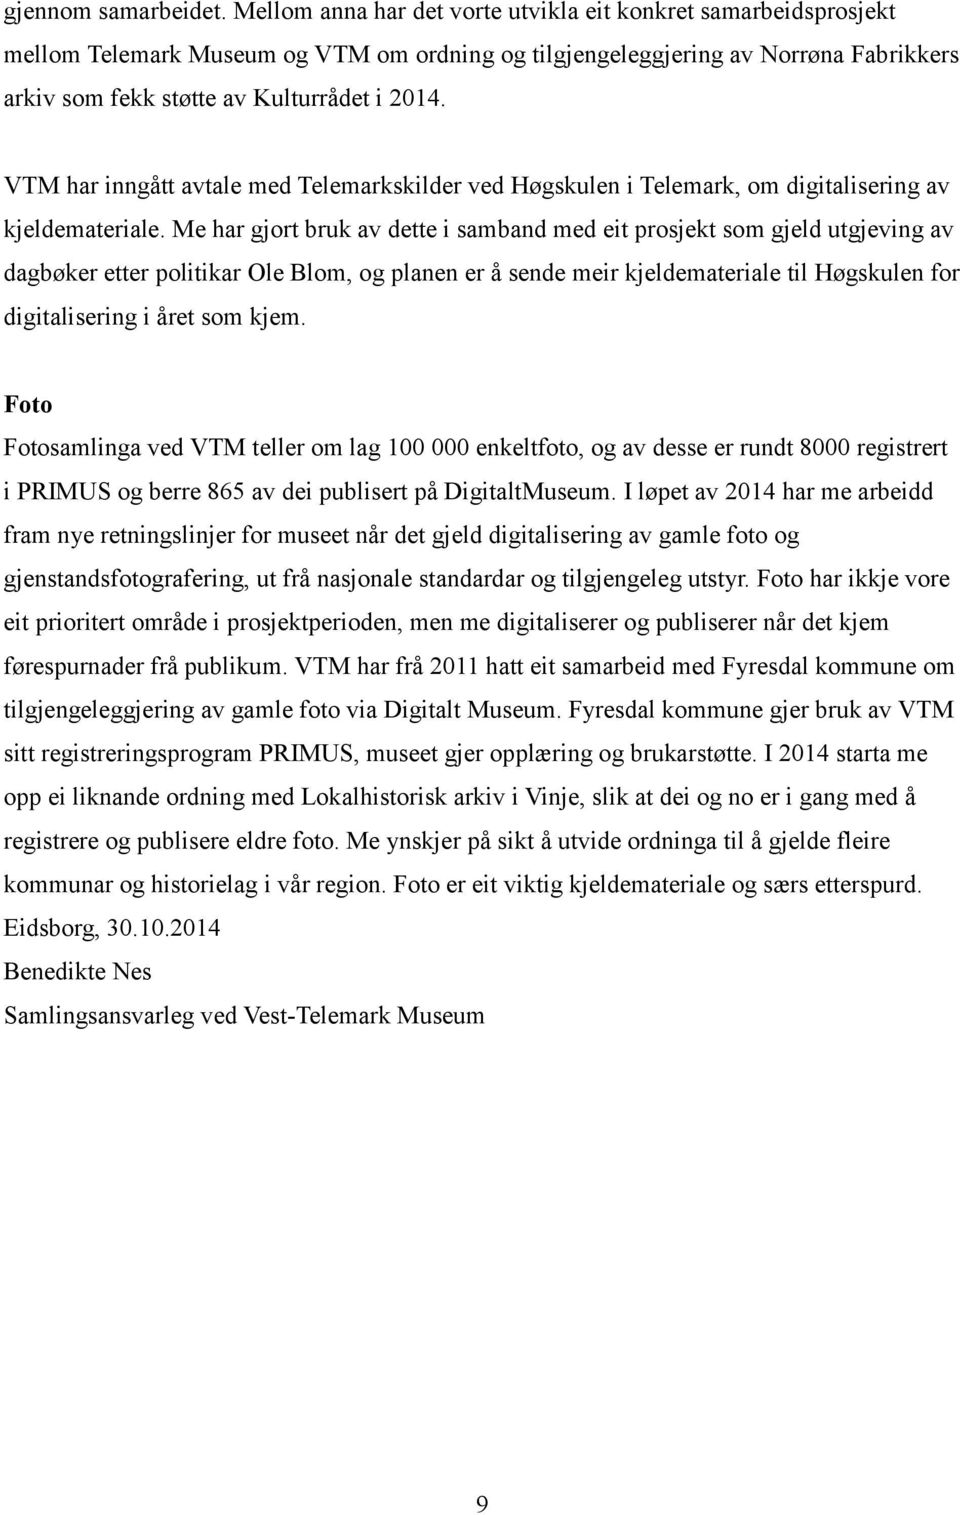 VTM har inngått avtale med Telemarkskilder ved Høgskulen i Telemark, om digitalisering av kjeldemateriale.